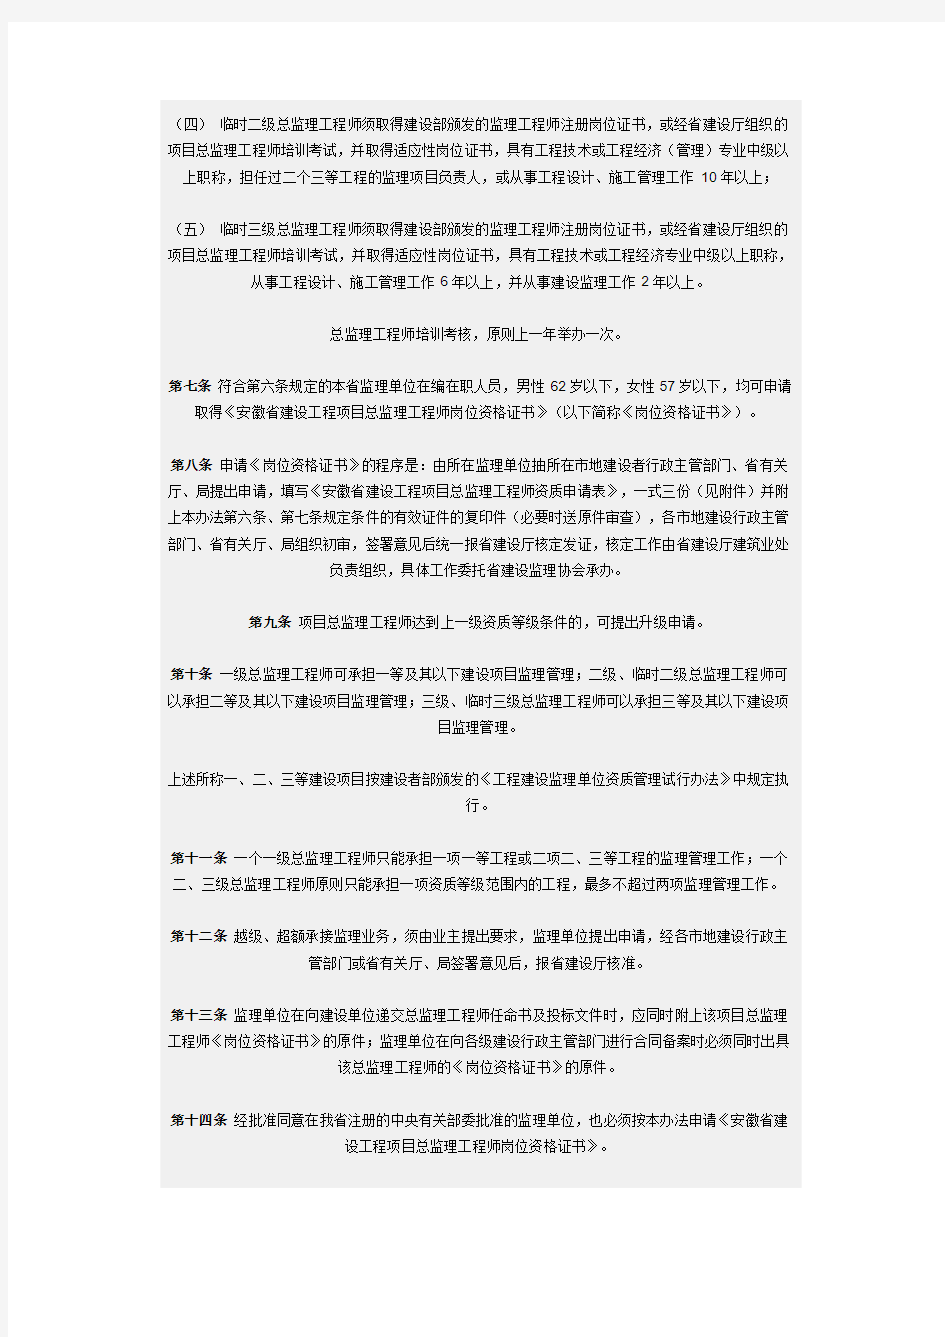 安徽省建设工程项目总监理工程师资质管理暂行办法